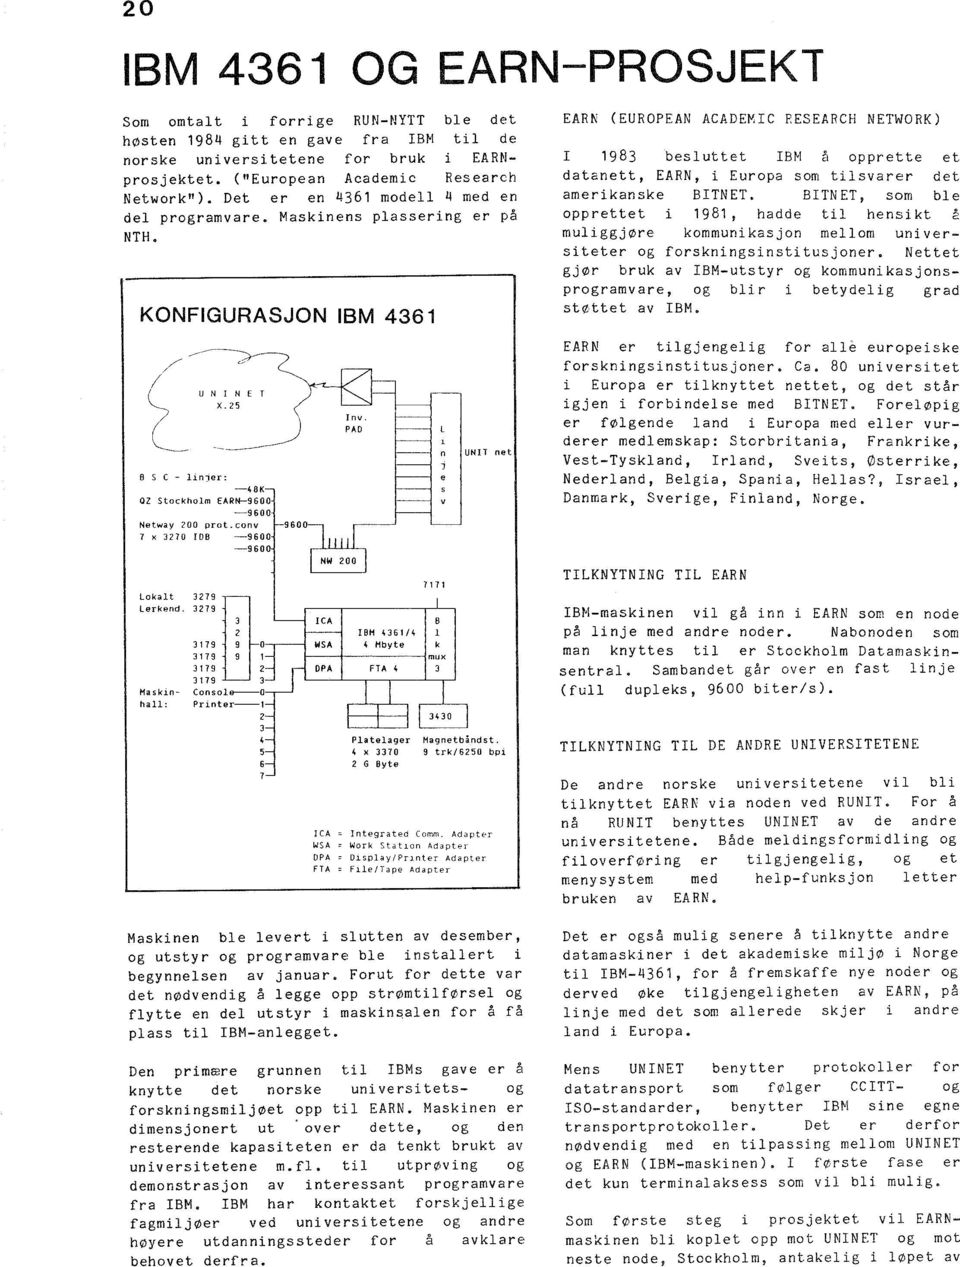 conv 9600 7 x 3270 OB -9600-9600 nv. PAO UNT net EARK (EUROPEAN ACADEMC RESEARCH NETWORK) 1983 besluttet BM å opprette et datanett, EARN, i Europa som tilsvarer det amerikanske BTNET.